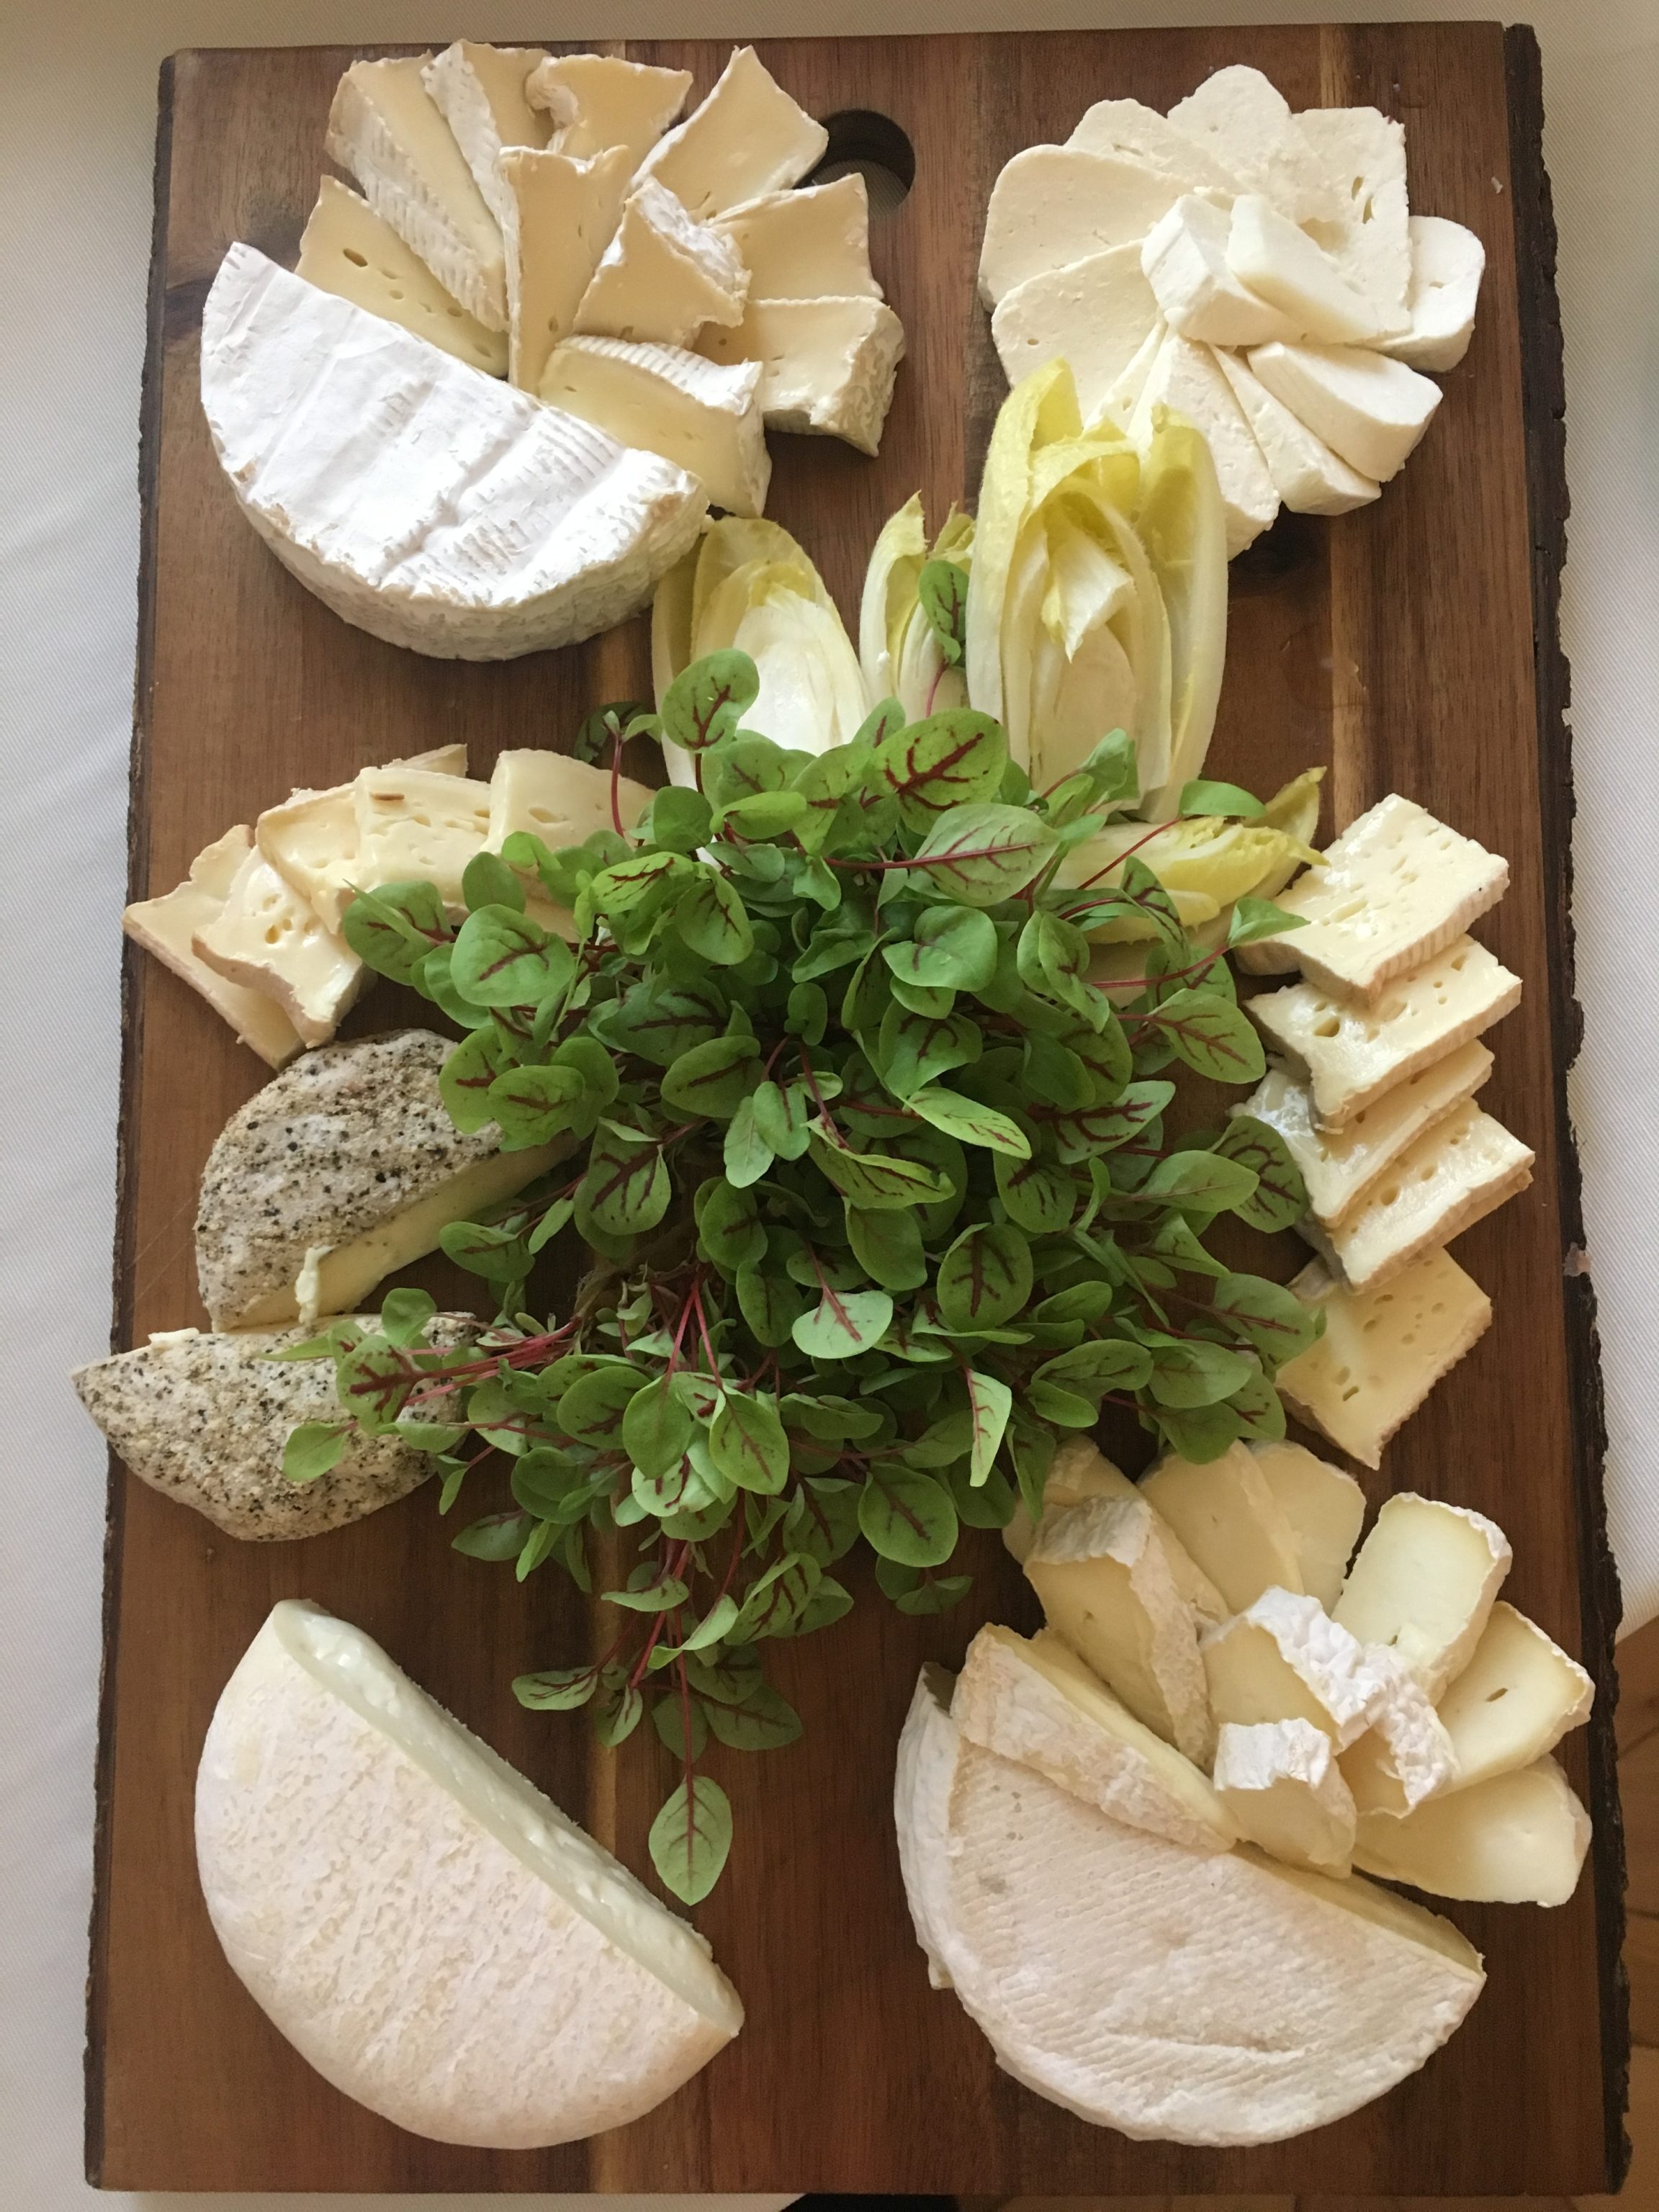 Types of Piedmontese cheese